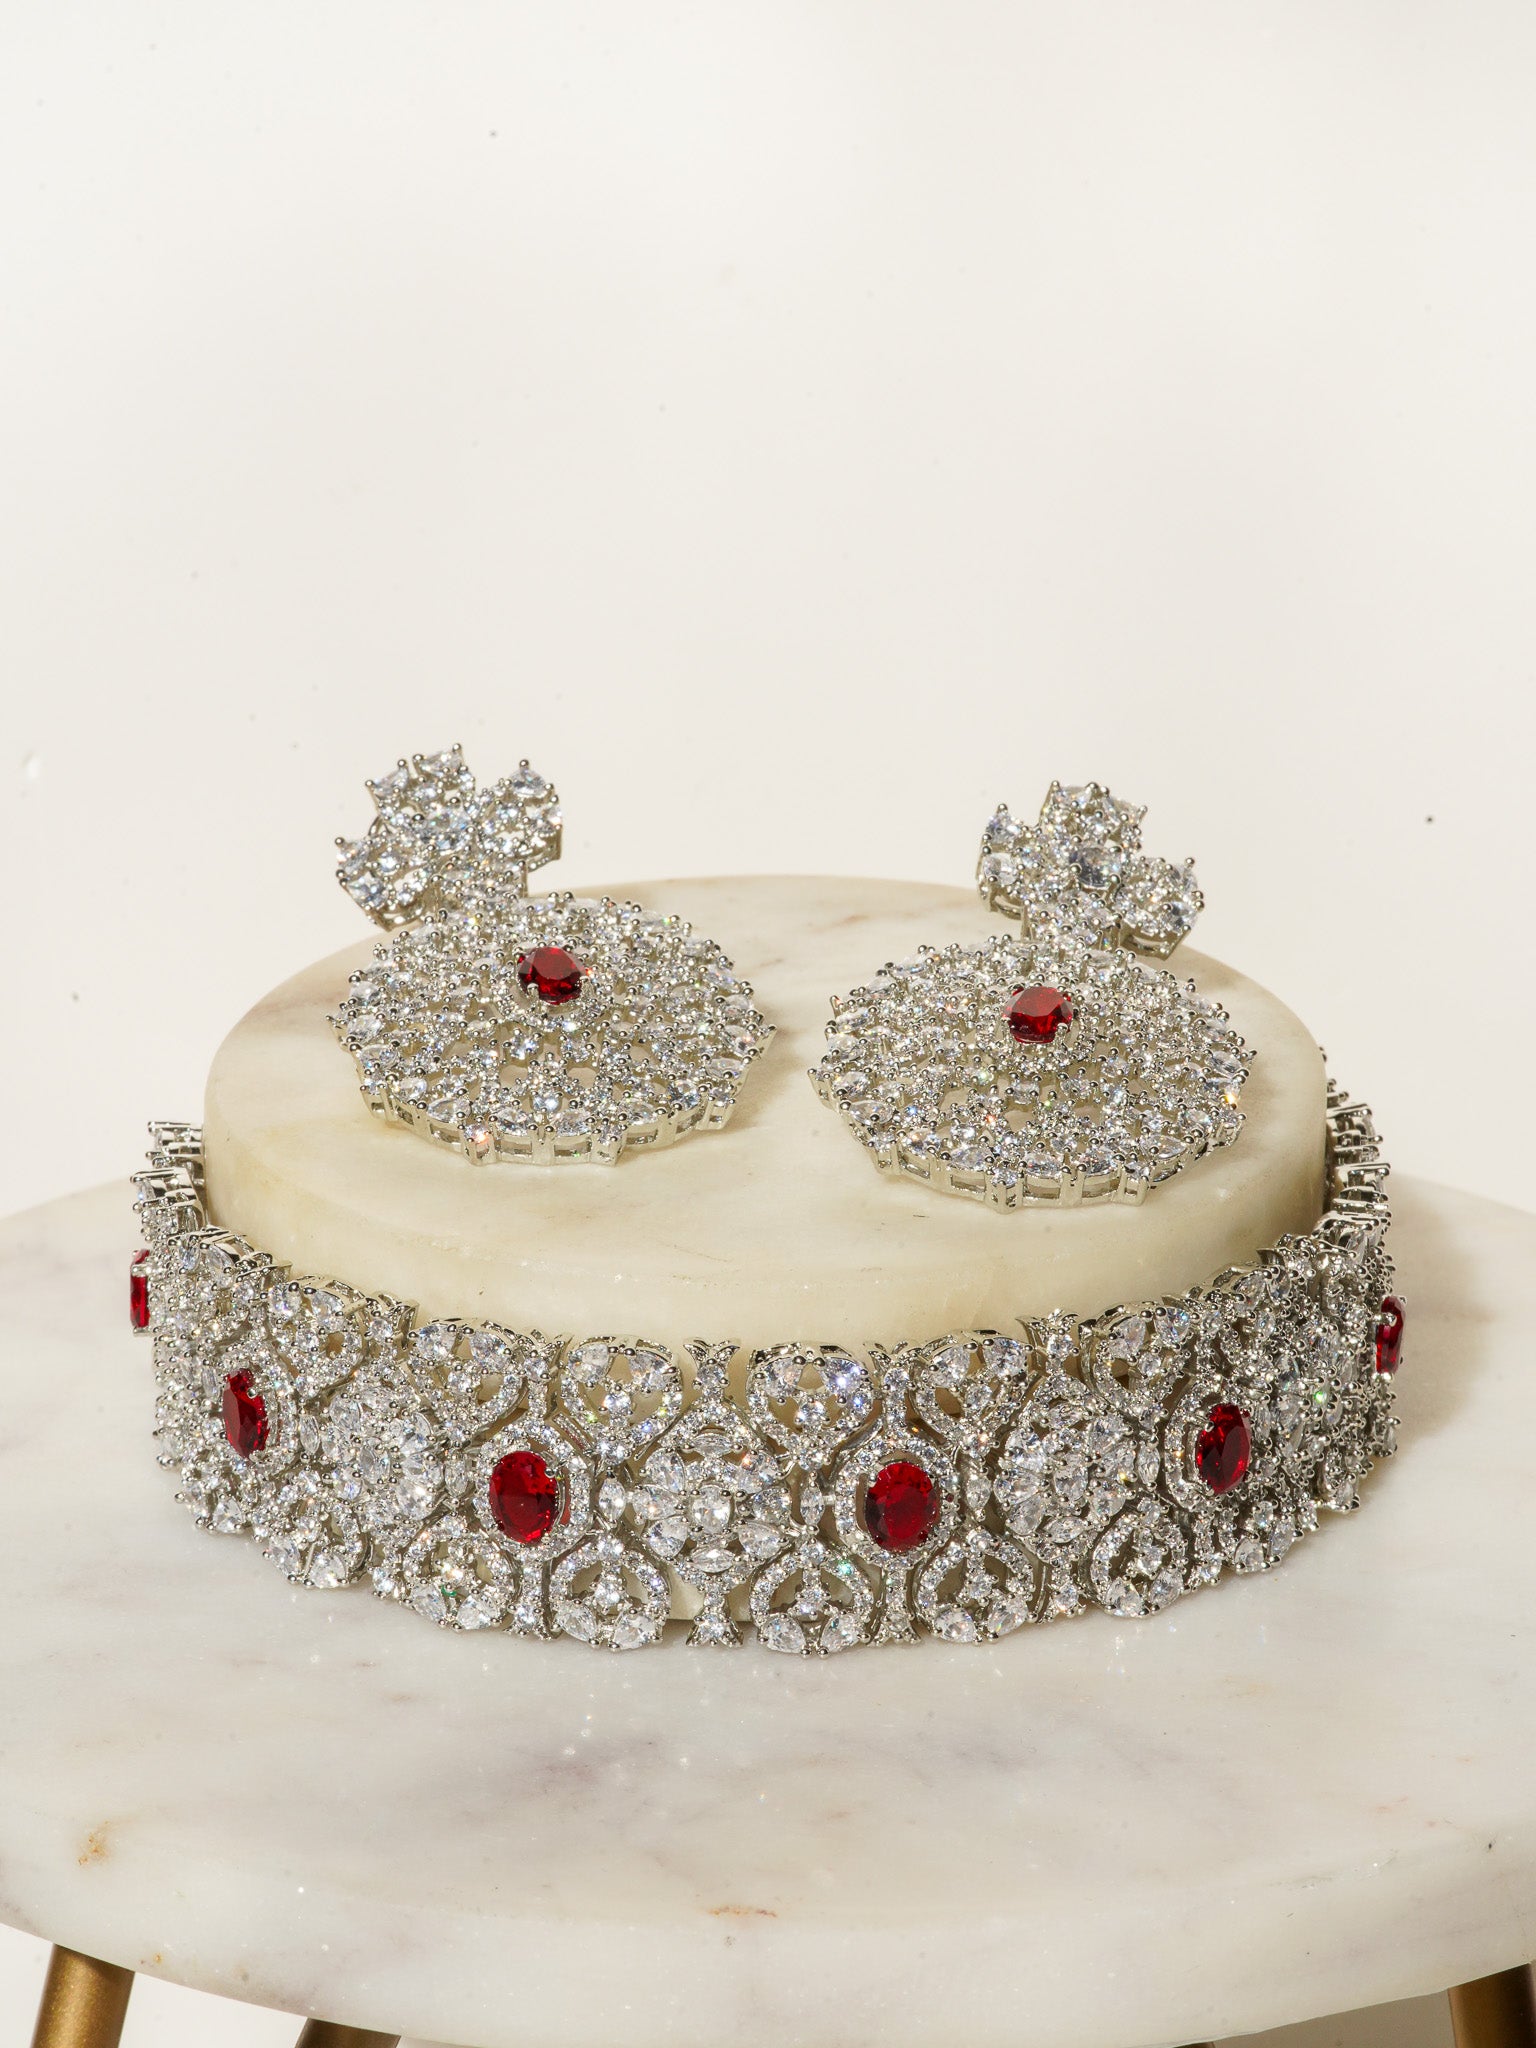 Priya Rhodium & Maroon Desi Bridal Set from Inaury.com